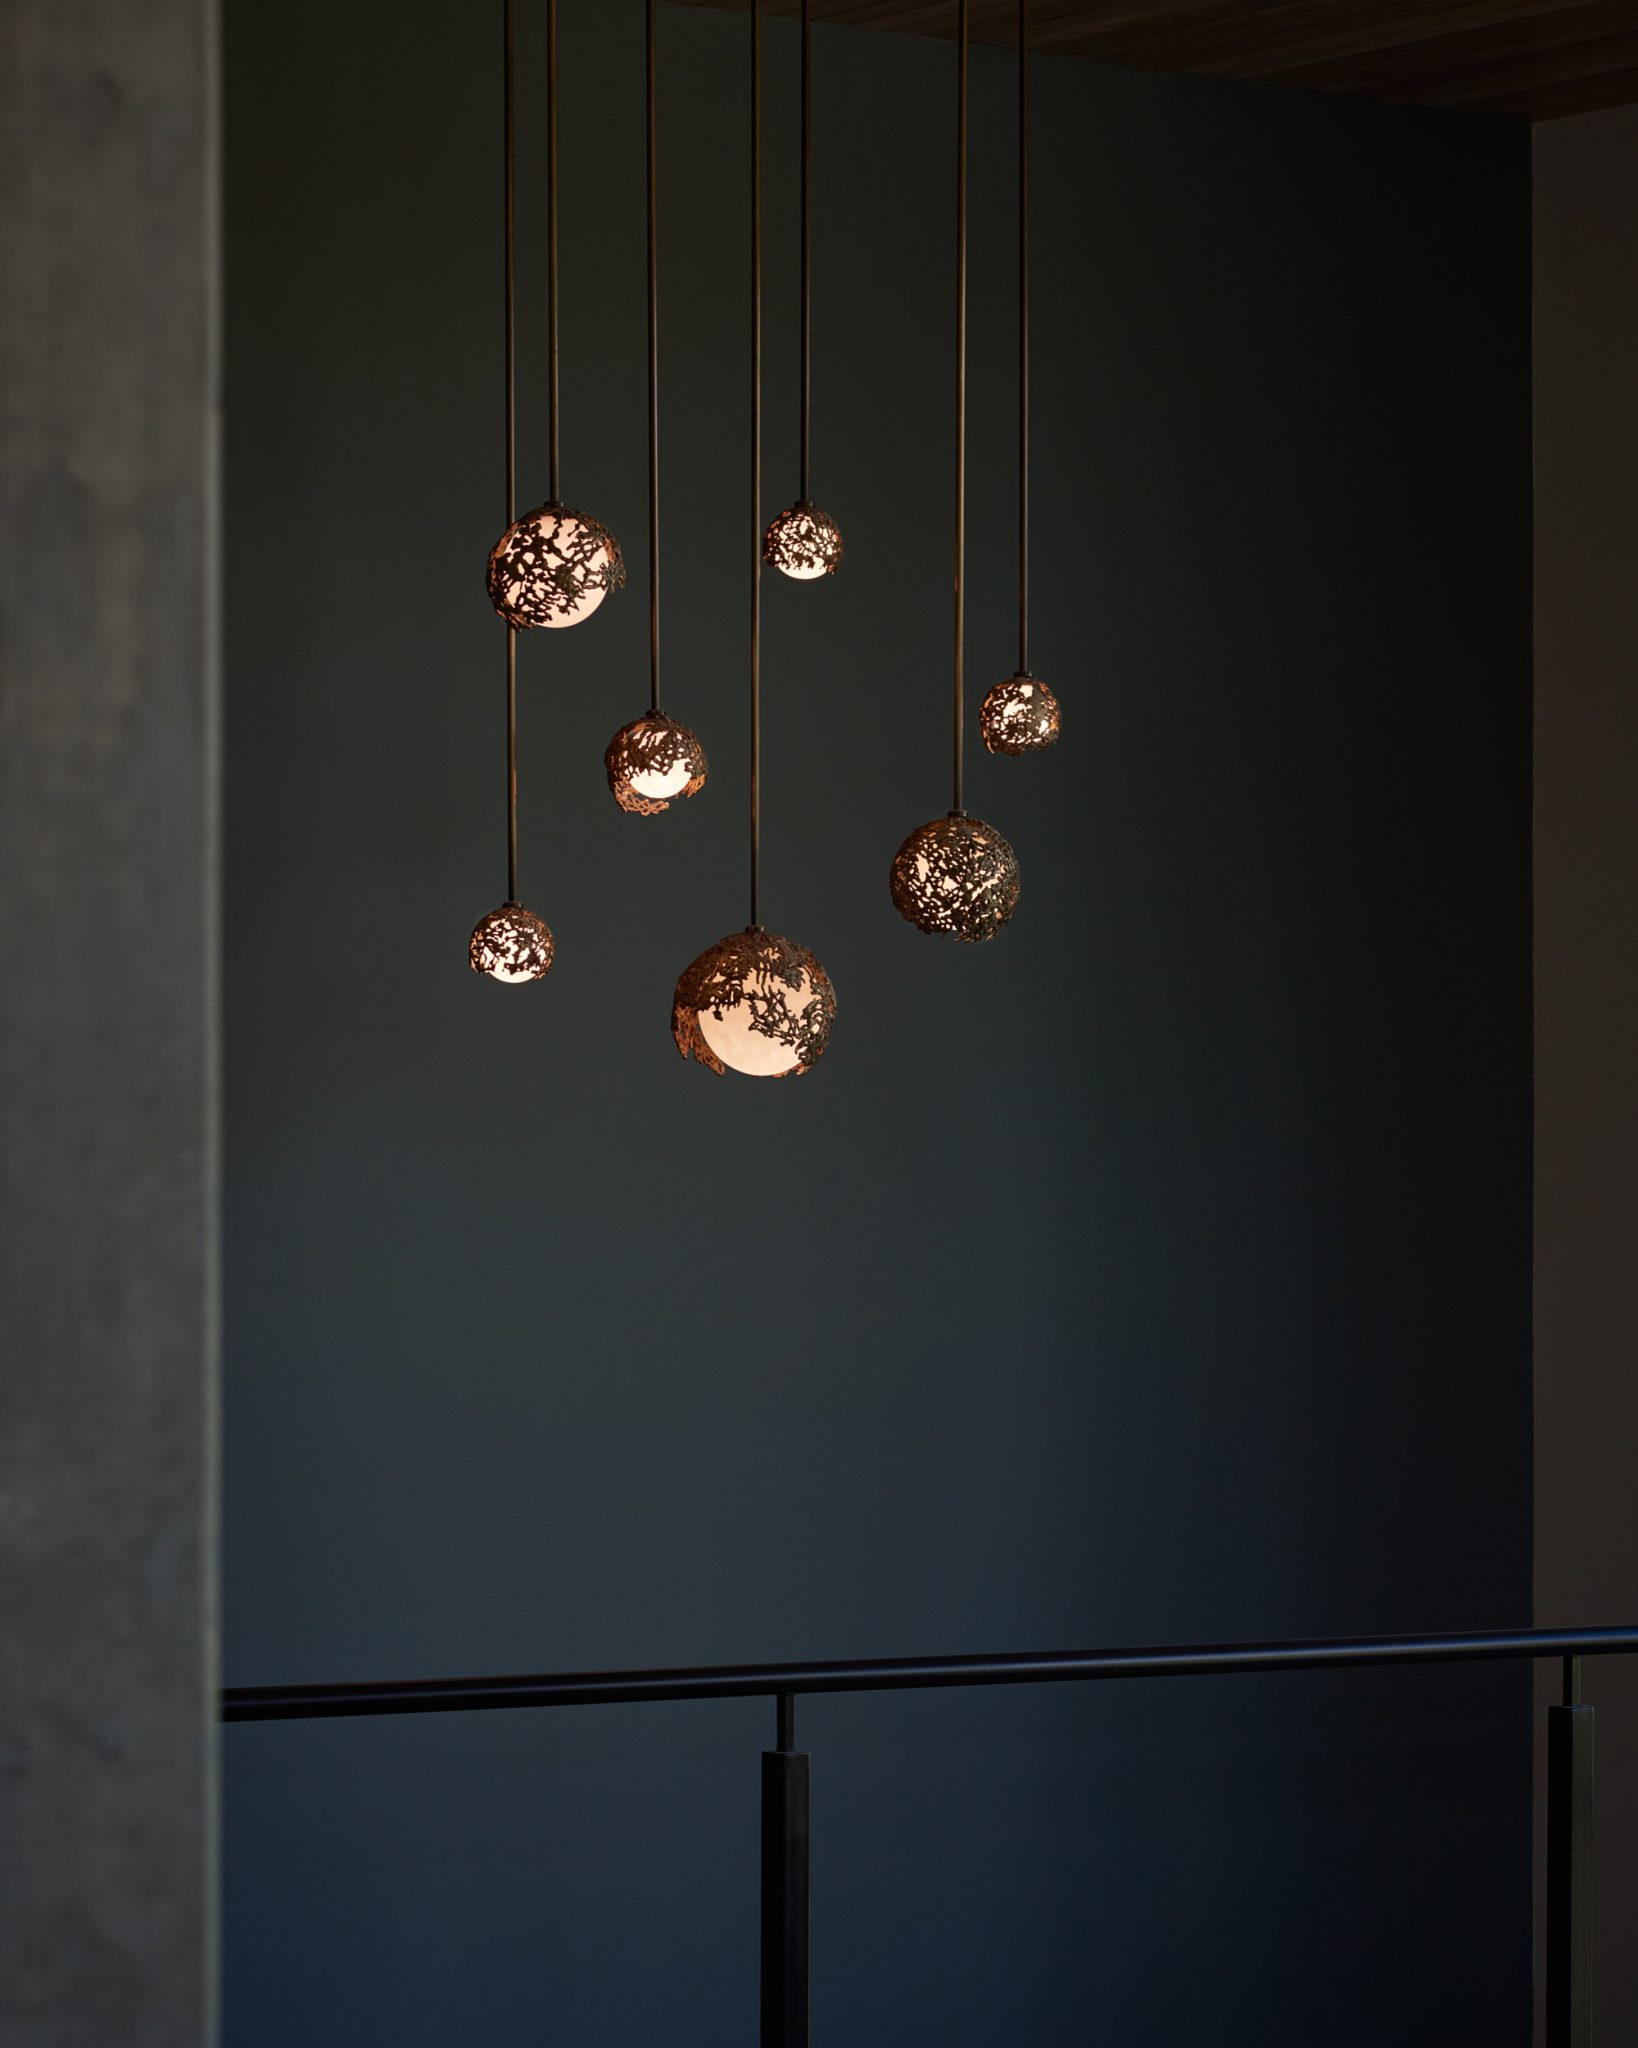 Spheres Light with Marie Khouri, Karice Lighting, Lighting Art